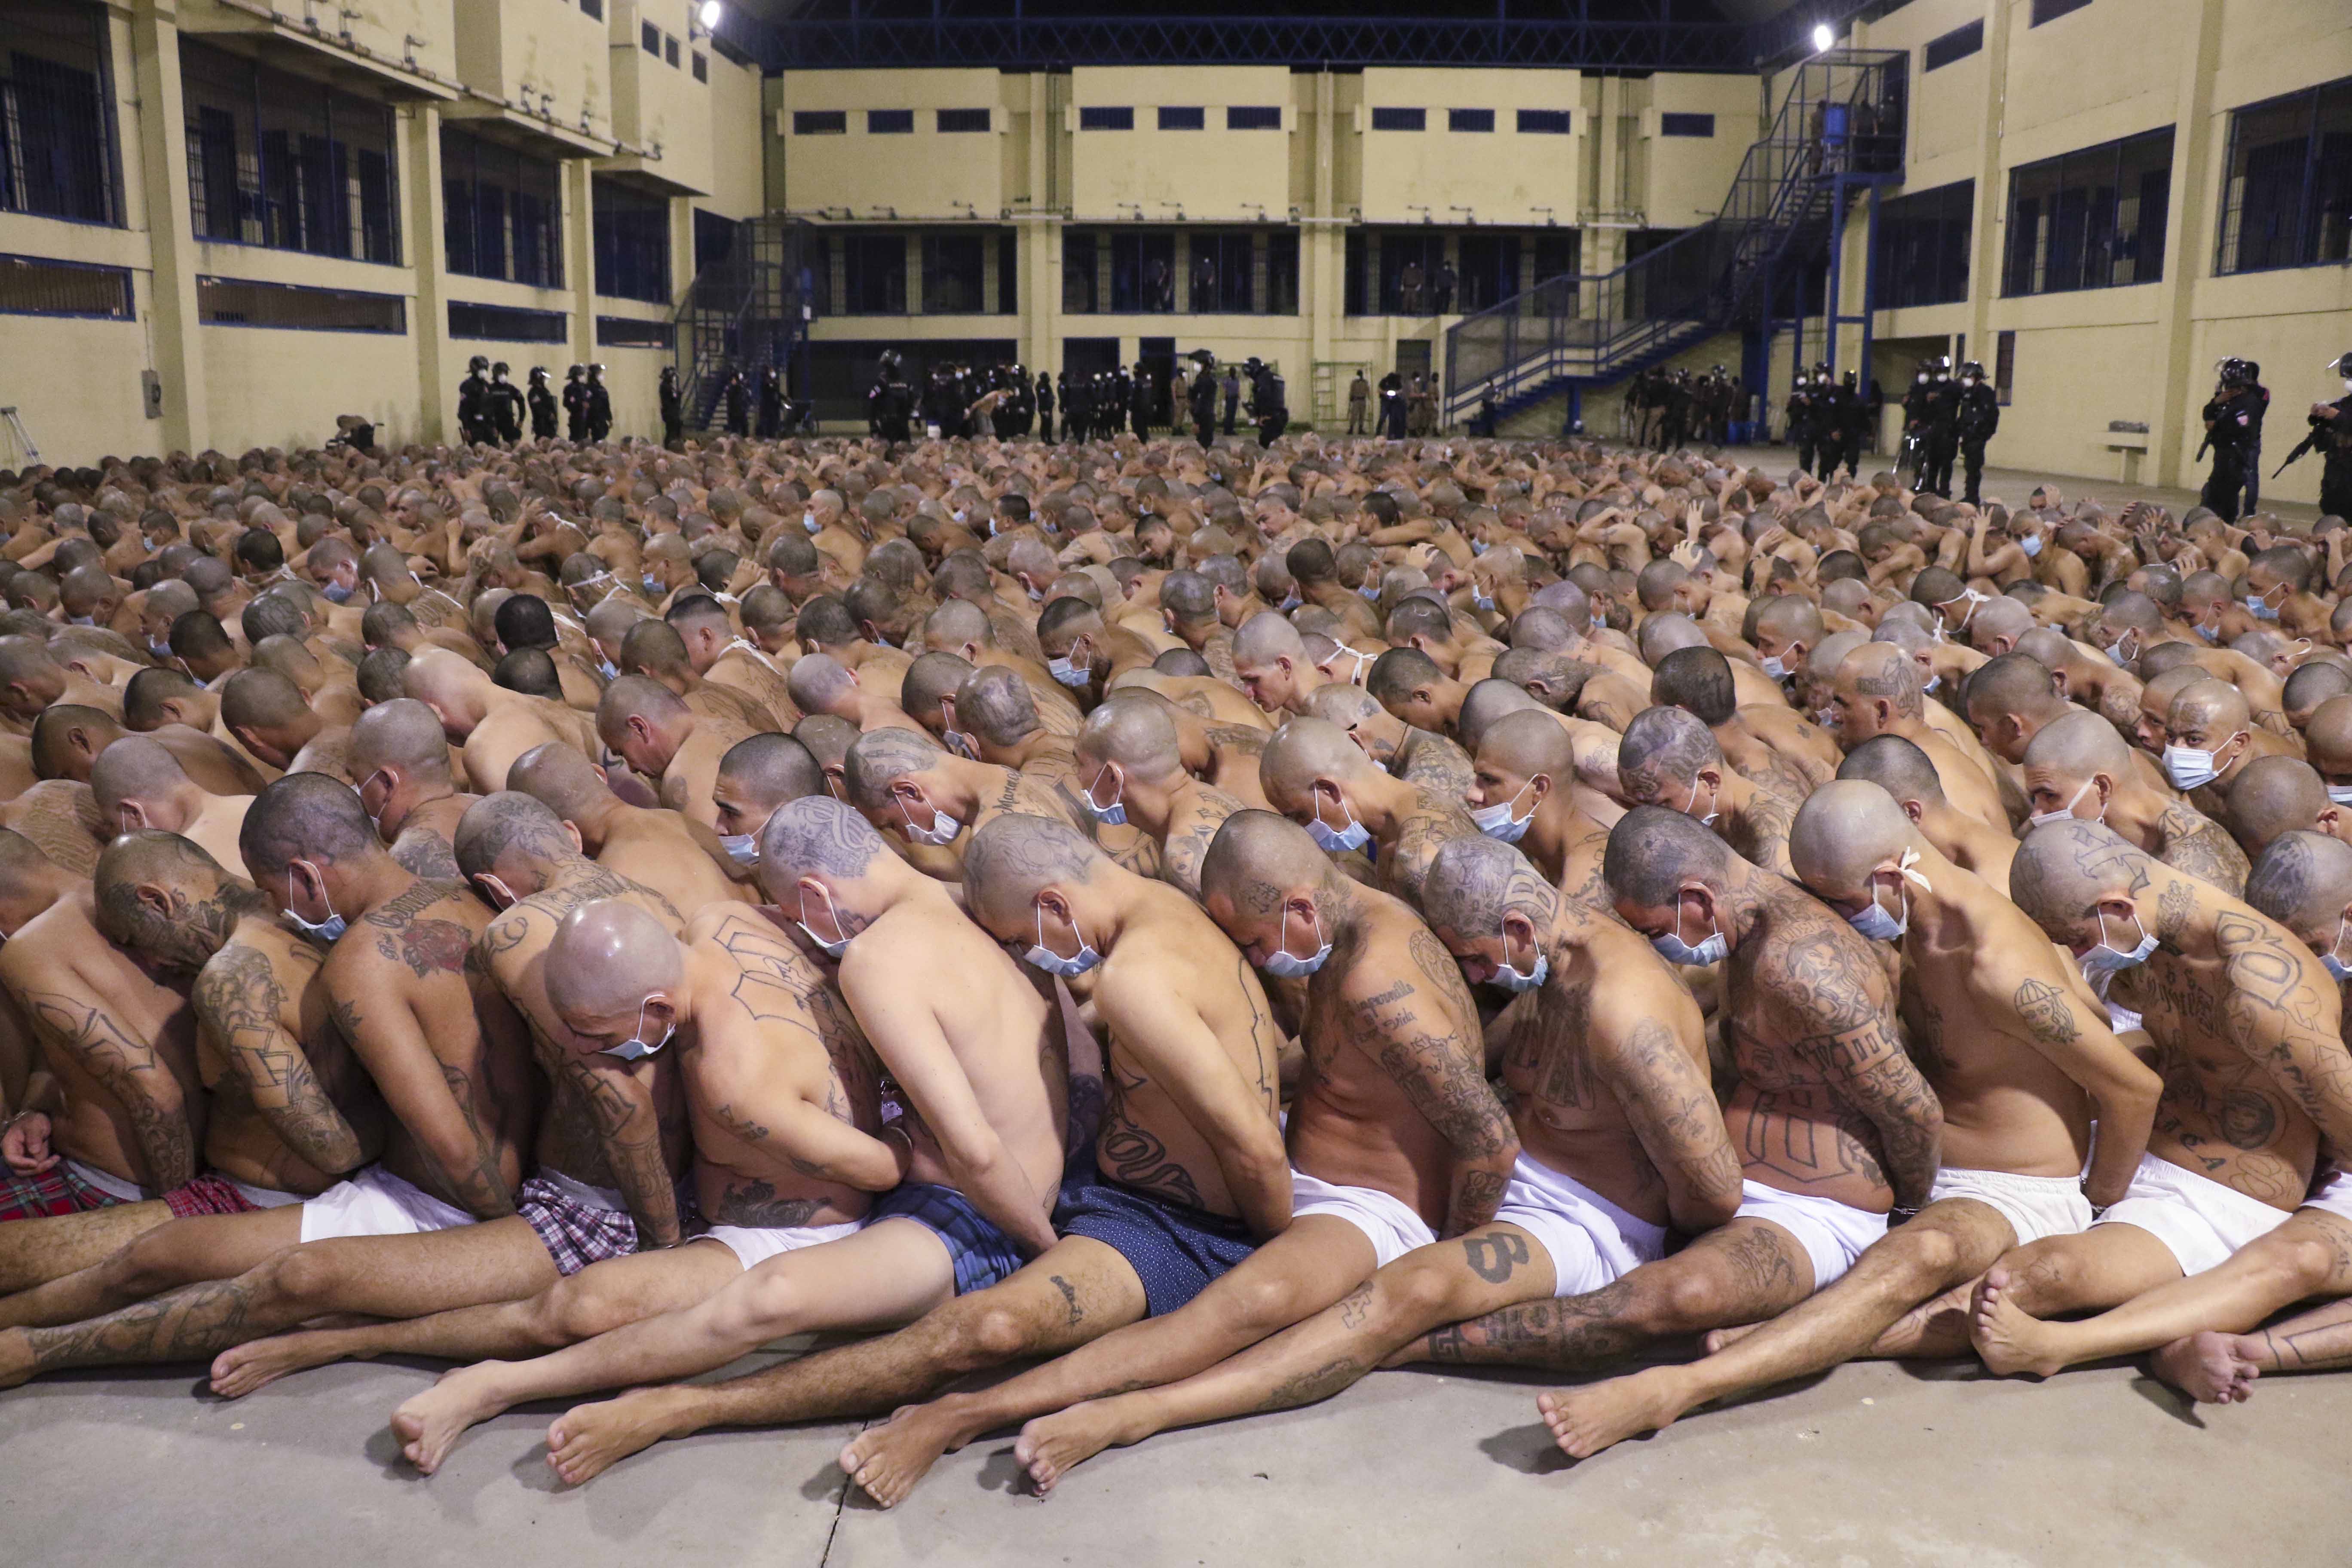 Сколько умирают в тюрьме. Человеческая многоножка 2009. Тюрьма Карандиру, Бразилия.